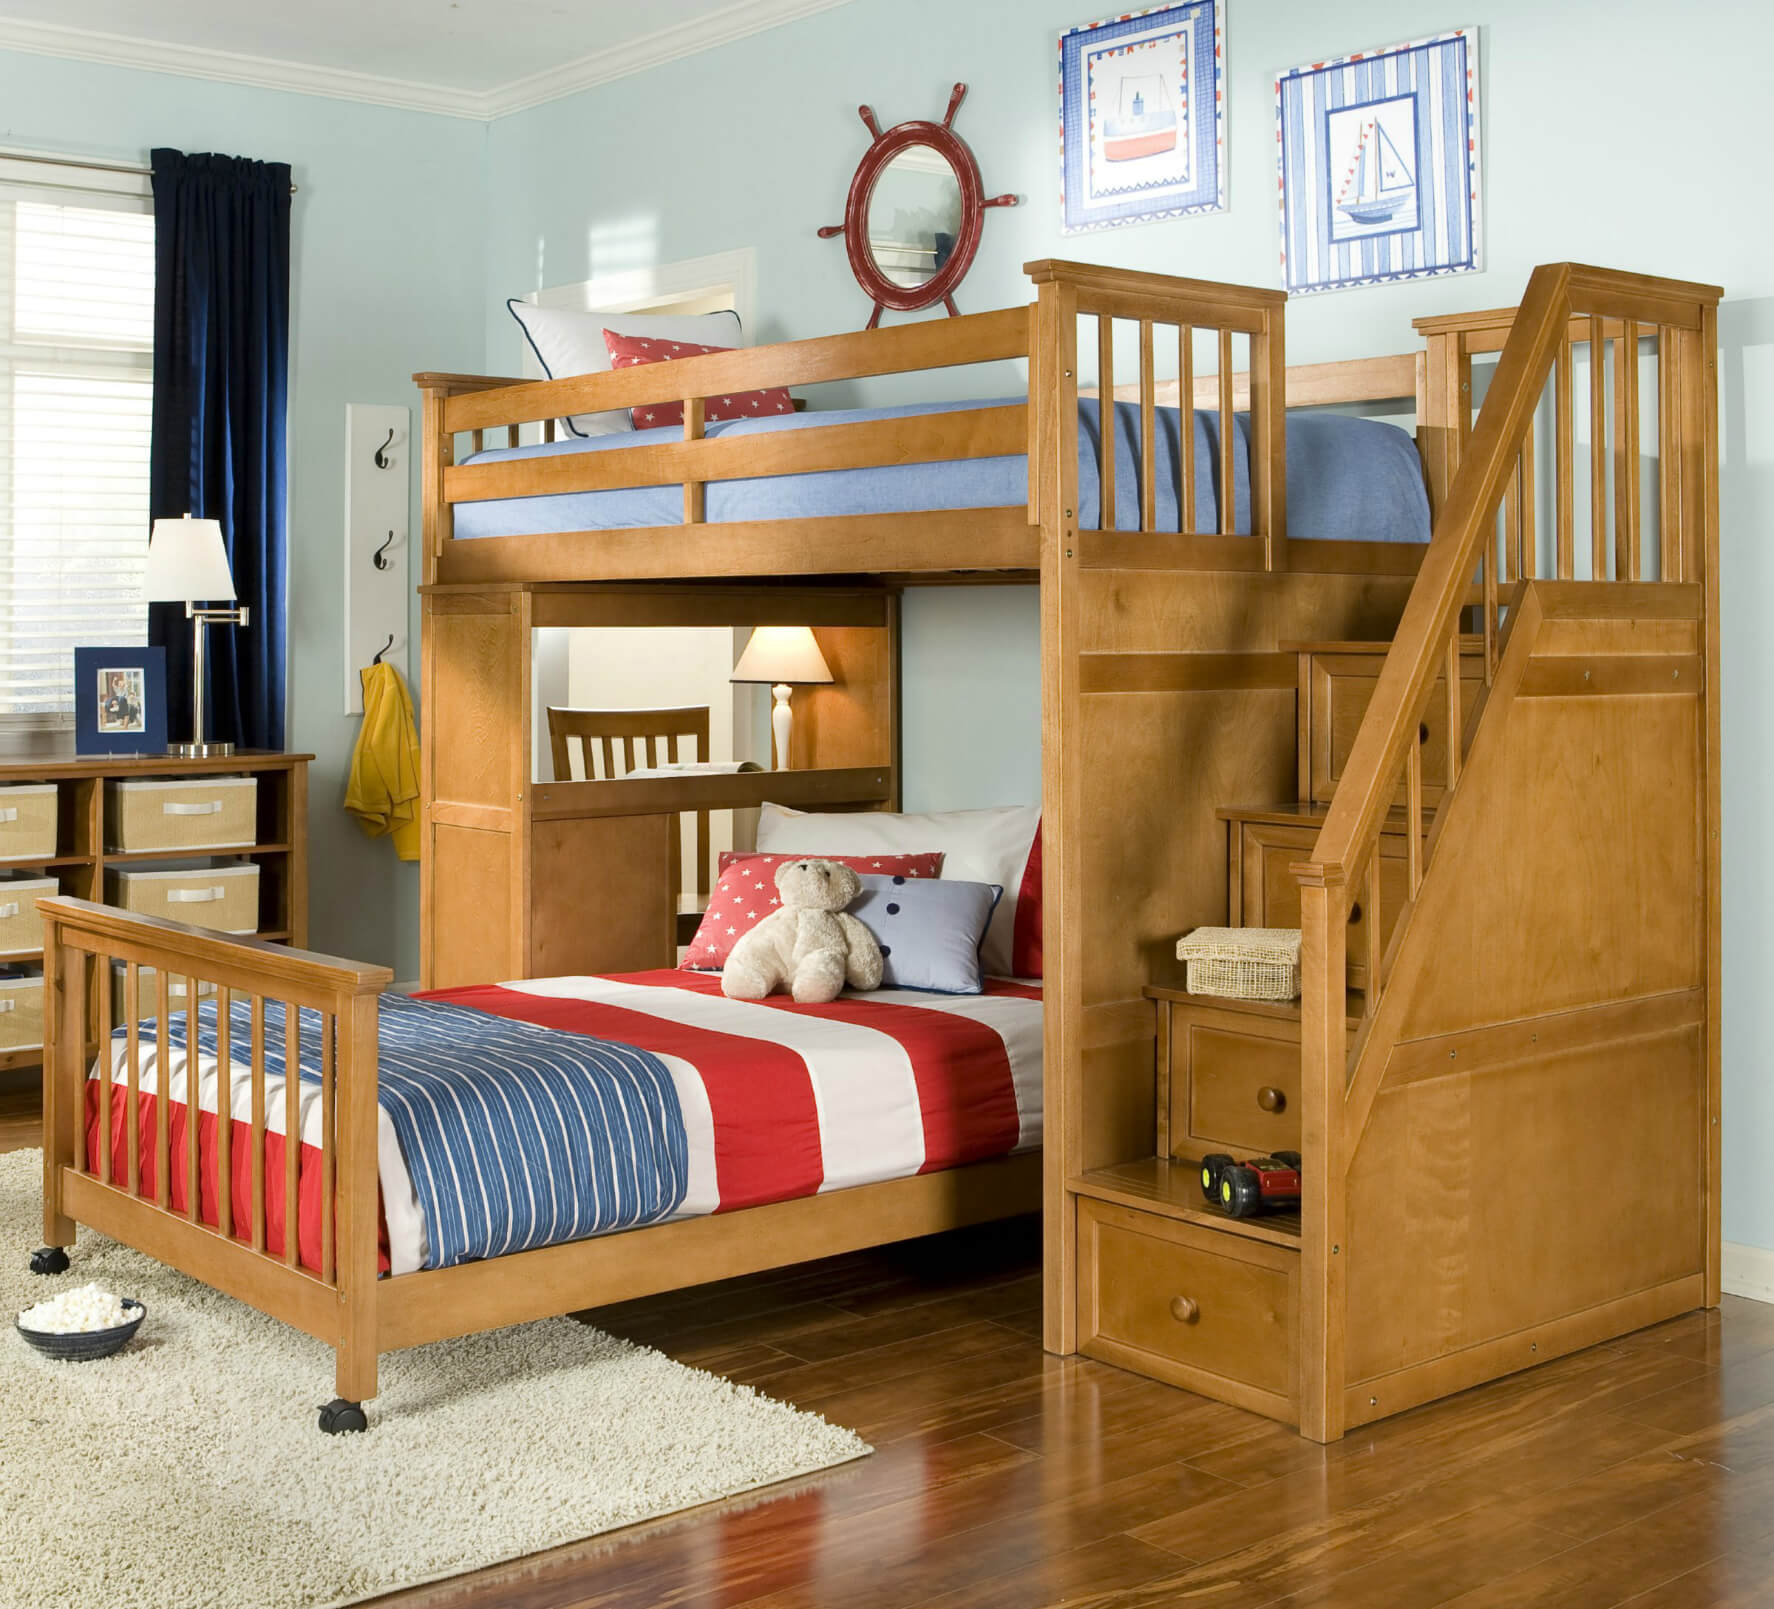 山核桃硬木l形床包括楼梯和书桌。下床(可以是双人床或全床)有轮子，与上床和储物柜分开。楼梯包括抽屉存储(非常聪明的设计)。